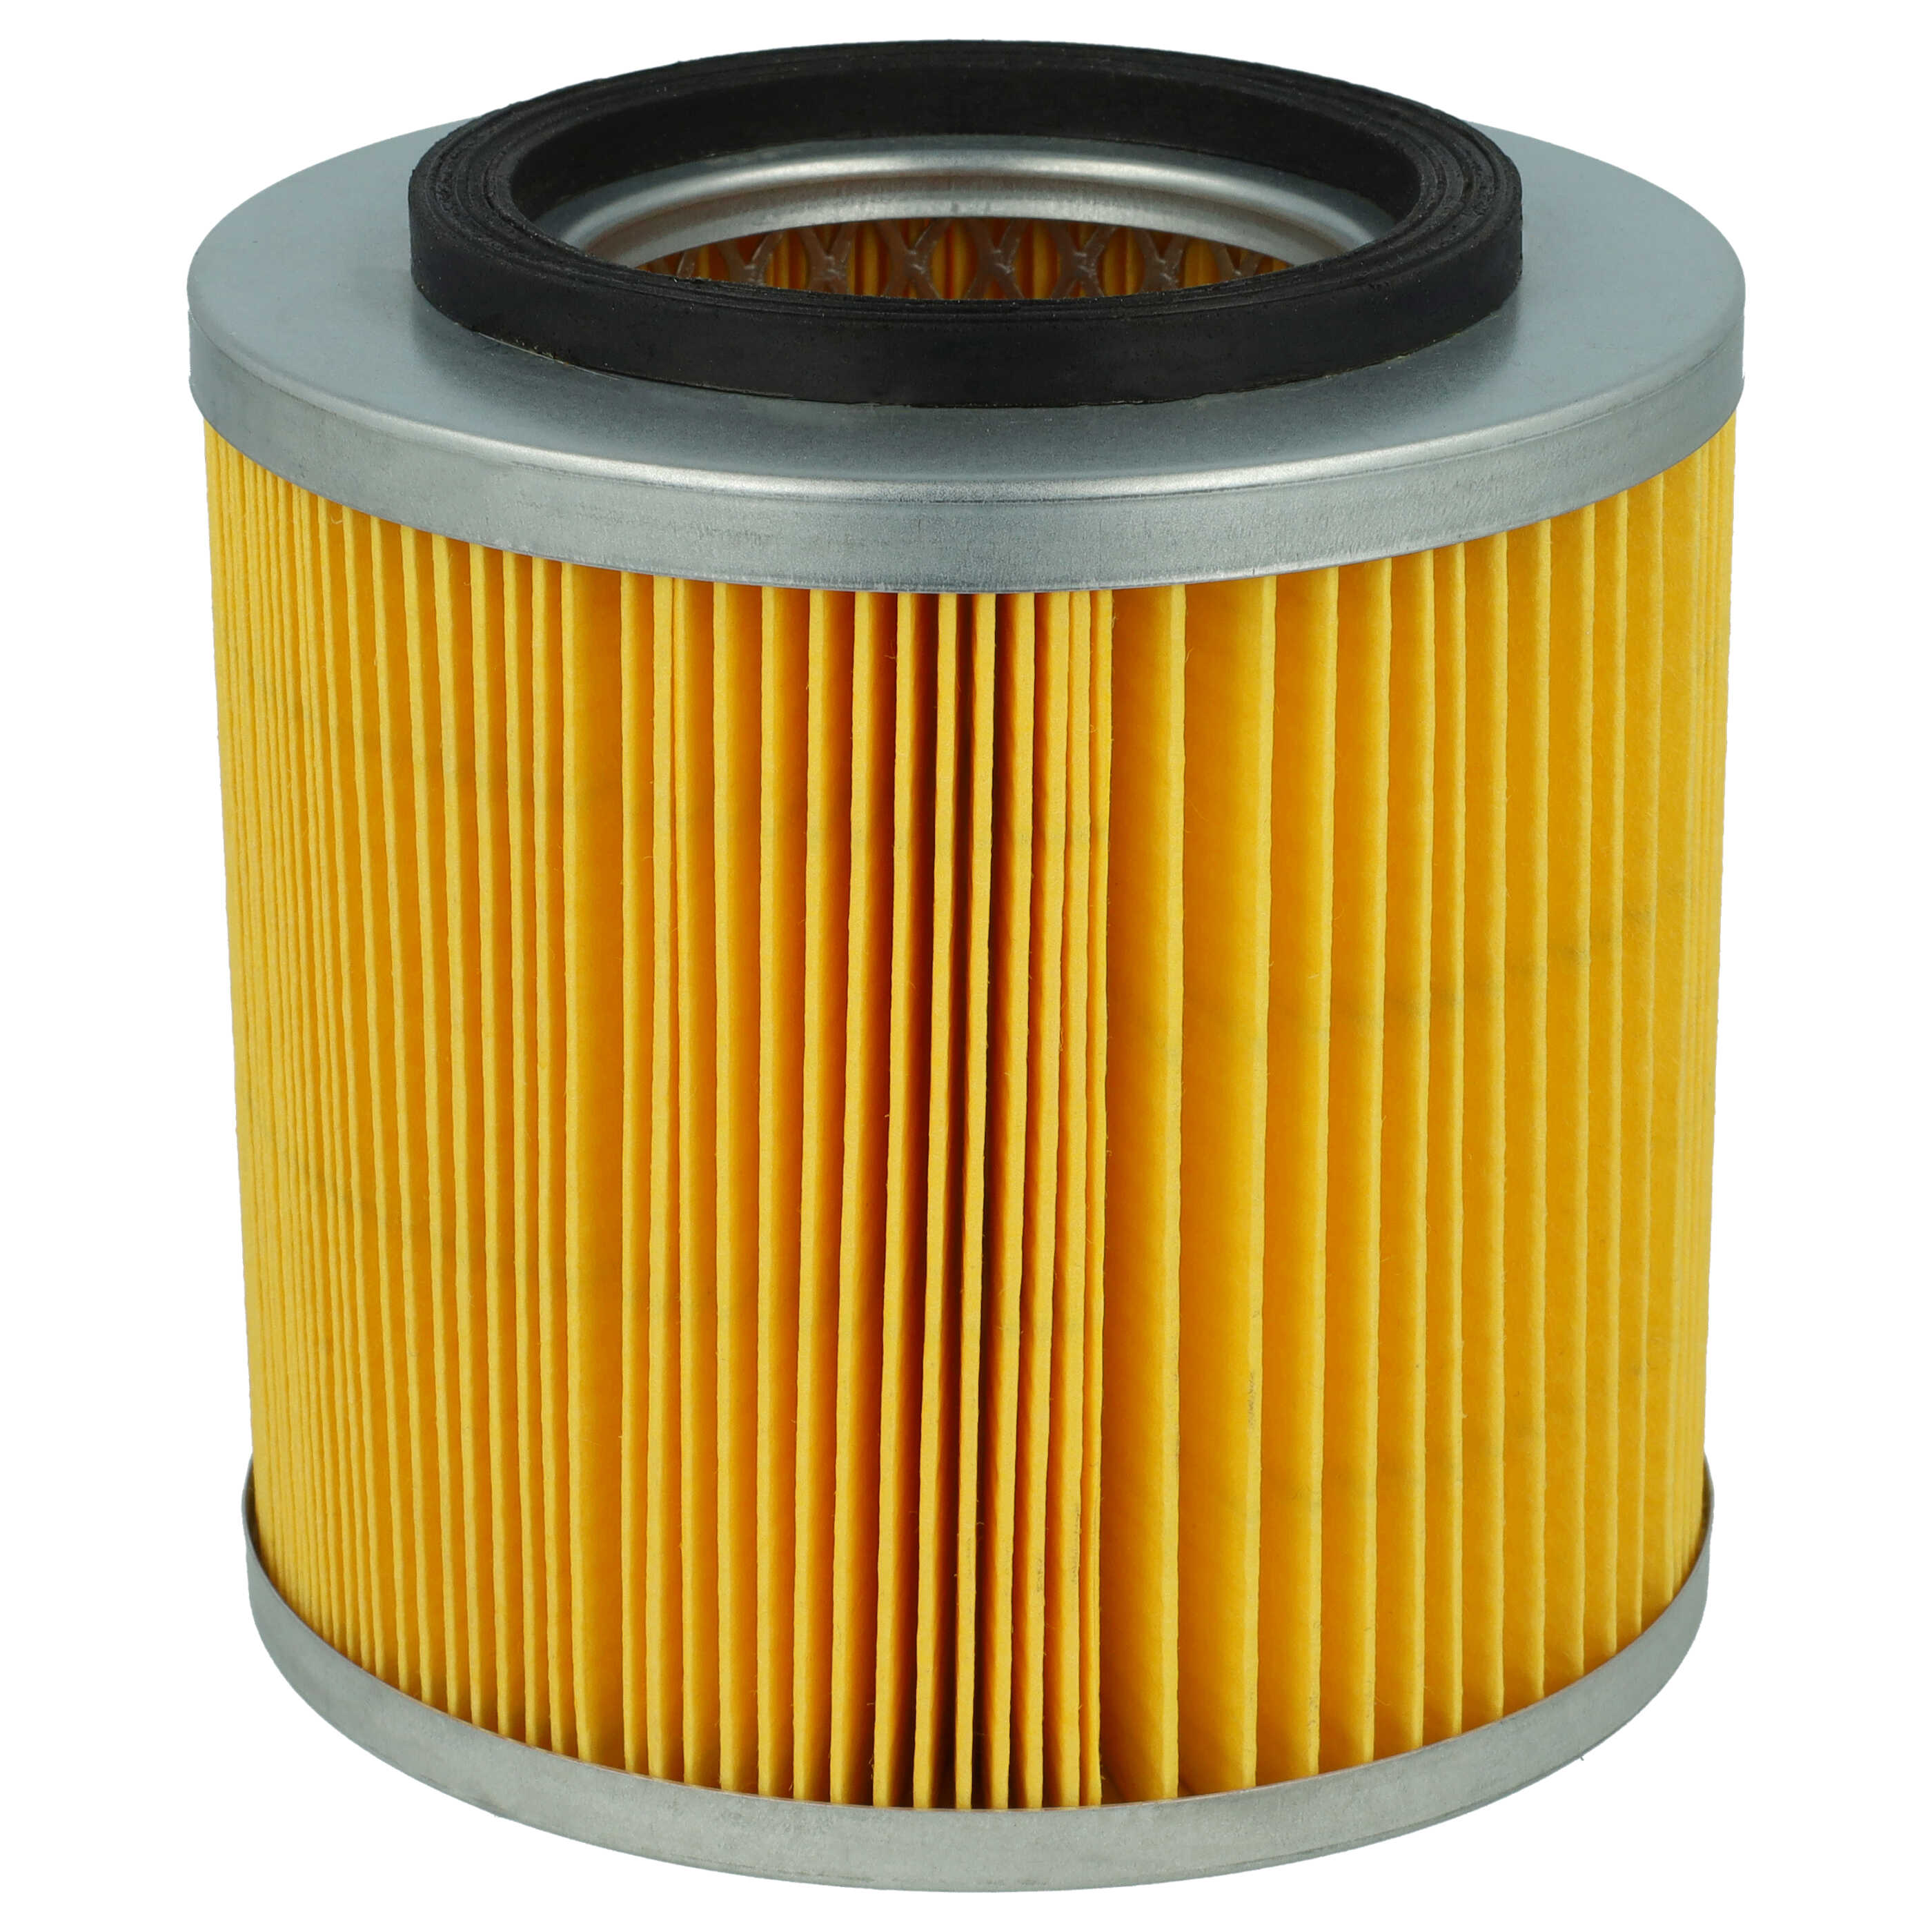 Patronen-Filter als Ersatz für Kärcher Staubsauger Filter 6.414-808.0 Filter